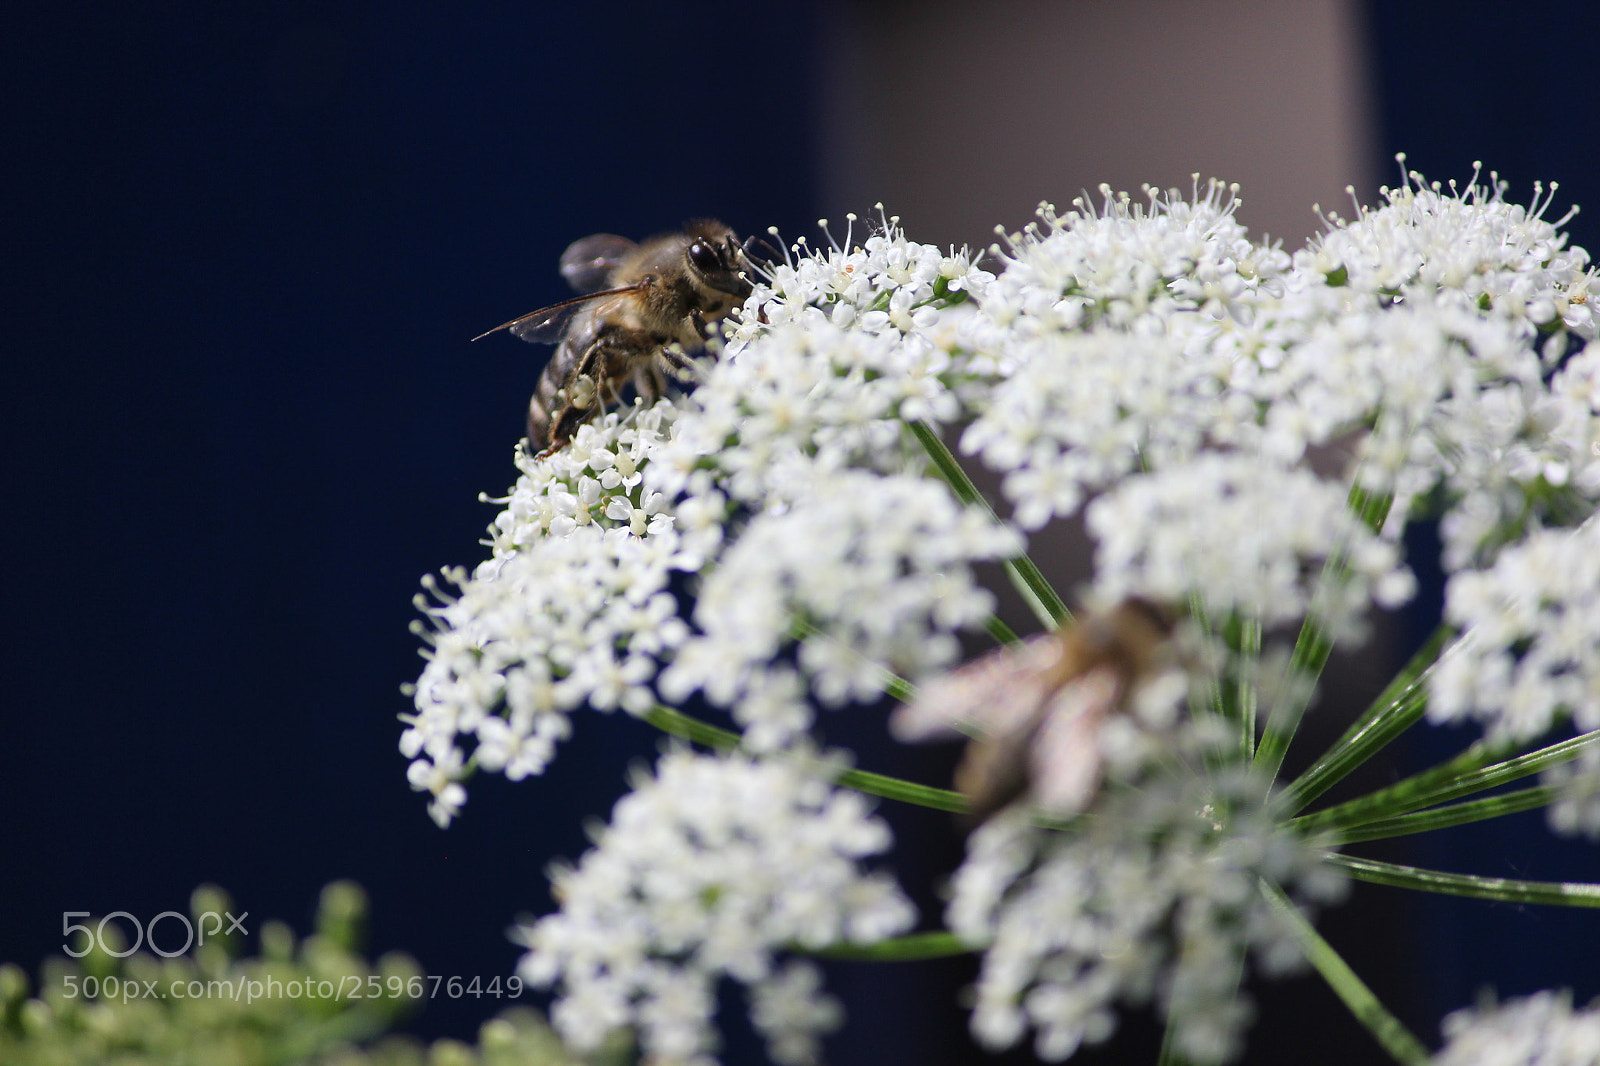 Canon EOS 600D (Rebel EOS T3i / EOS Kiss X5) sample photo. Bees in garden photography